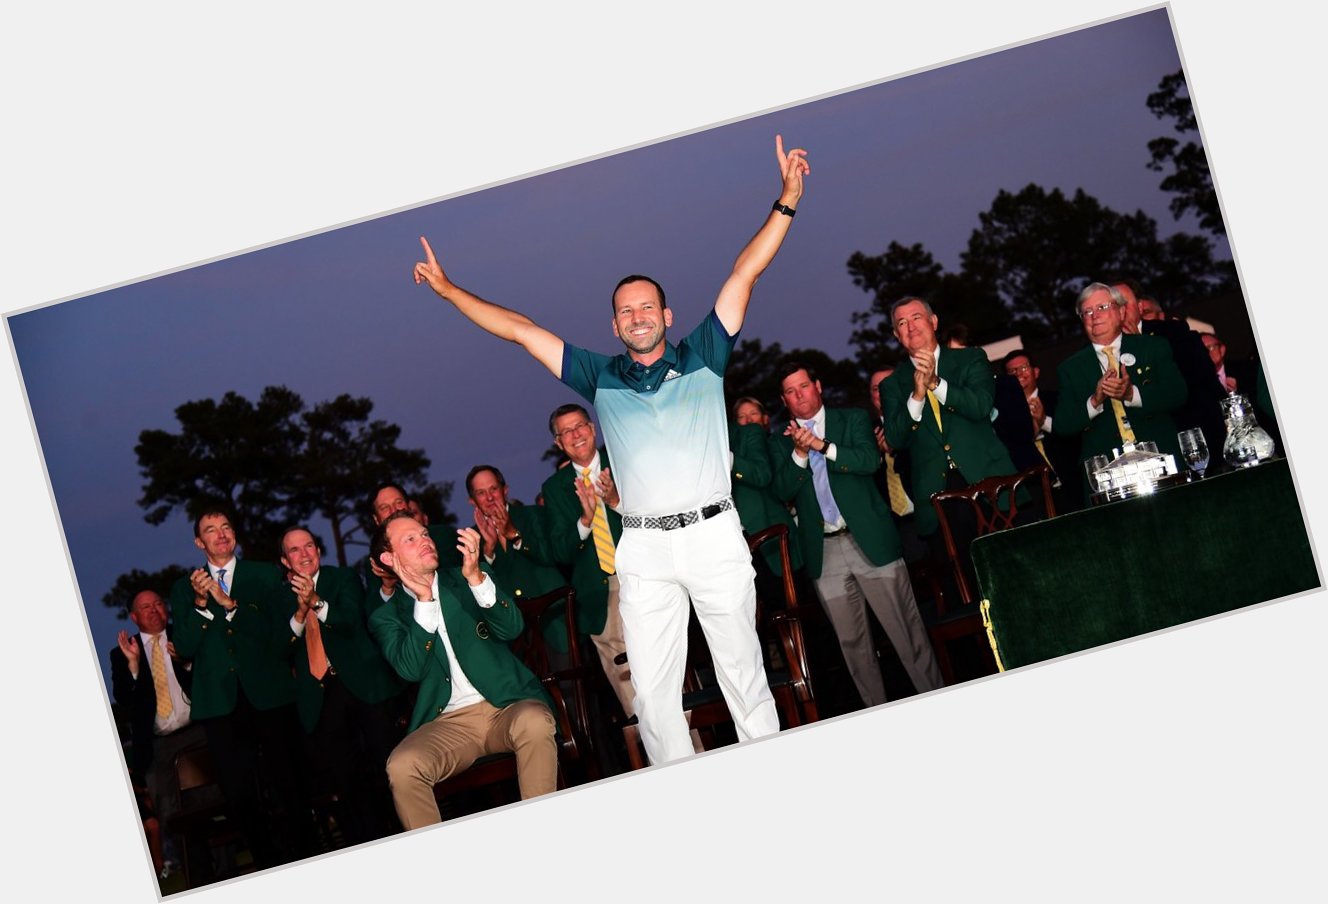  15 European Tour wins 10 PGA Tour wins 2017 Masters Champion

Happy birthday Sergio Garcia! 